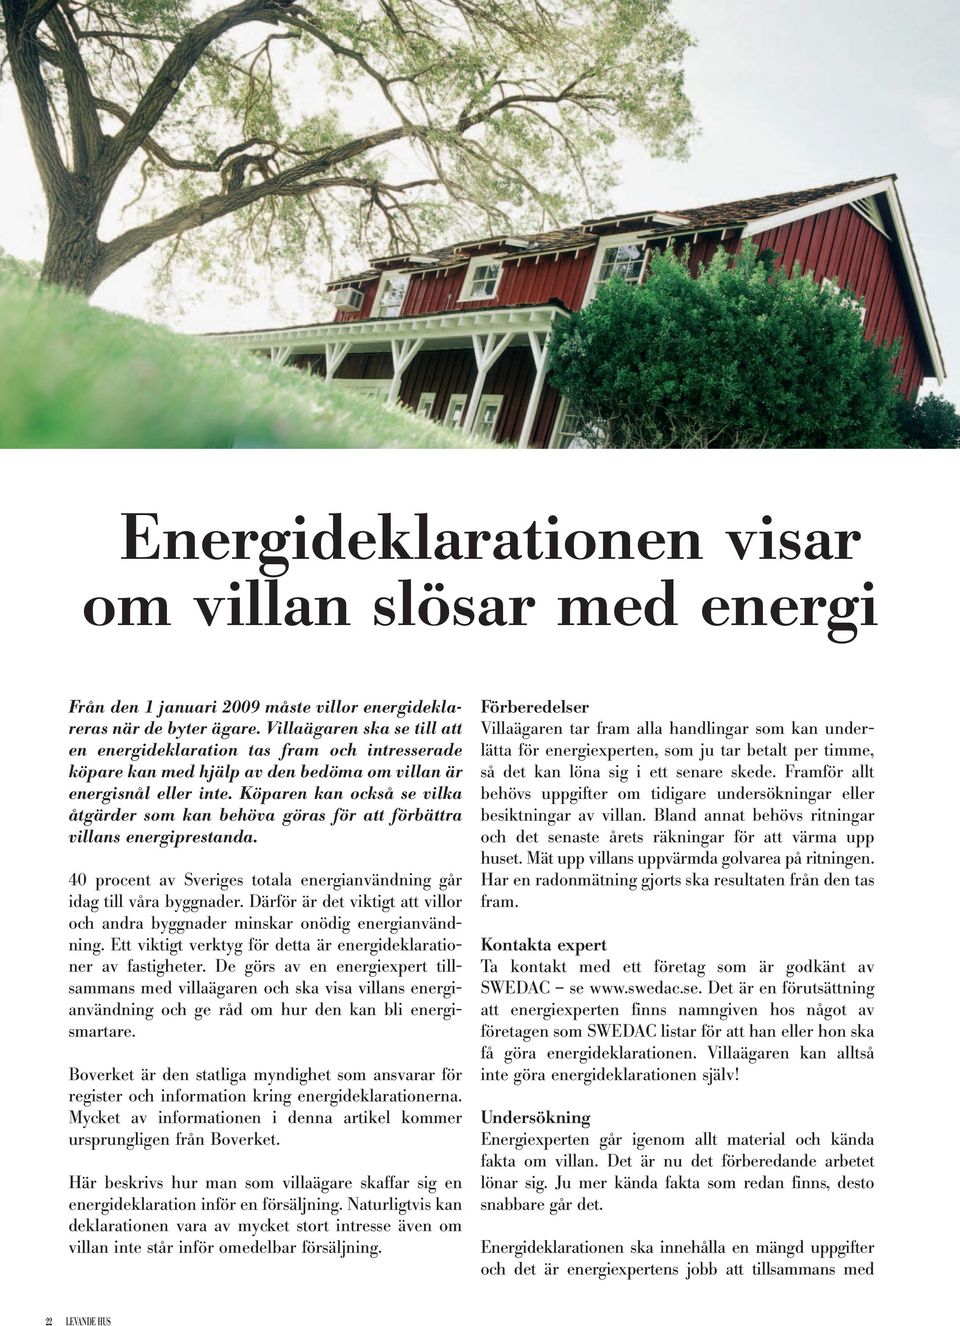 Köparen kan också se vilka åtgärder som kan behöva göras för att förbättra villans energiprestanda. 40 procent av Sveriges totala energianvändning går idag till våra byggnader.